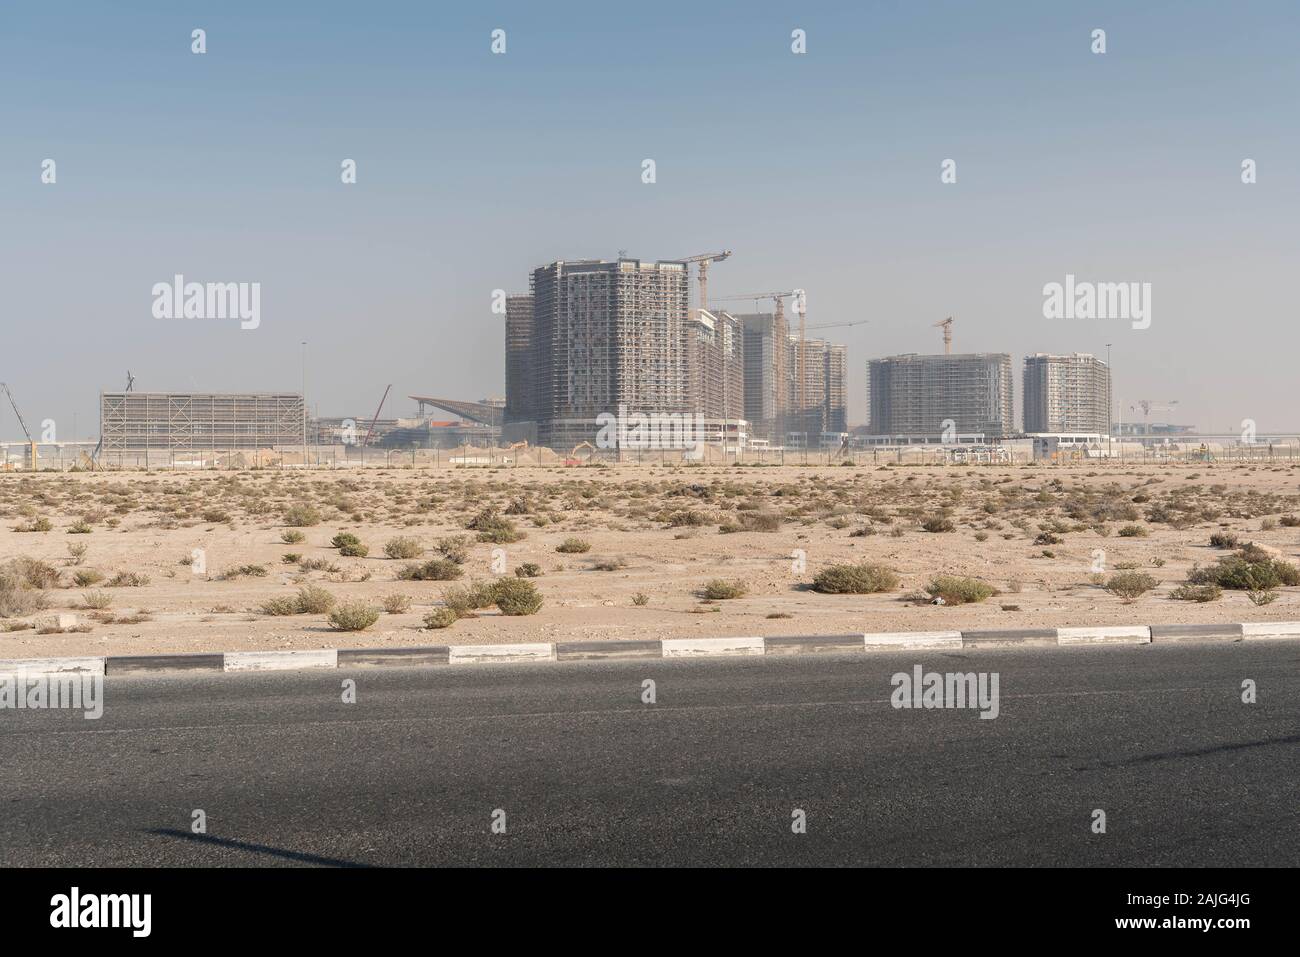 Dubai, Emiratos Árabes Unidos: sitio de construcción de la Expo 2020, edificios en construcción, andamios y grúas, cerca del aeropuerto Al Maktum Foto de stock